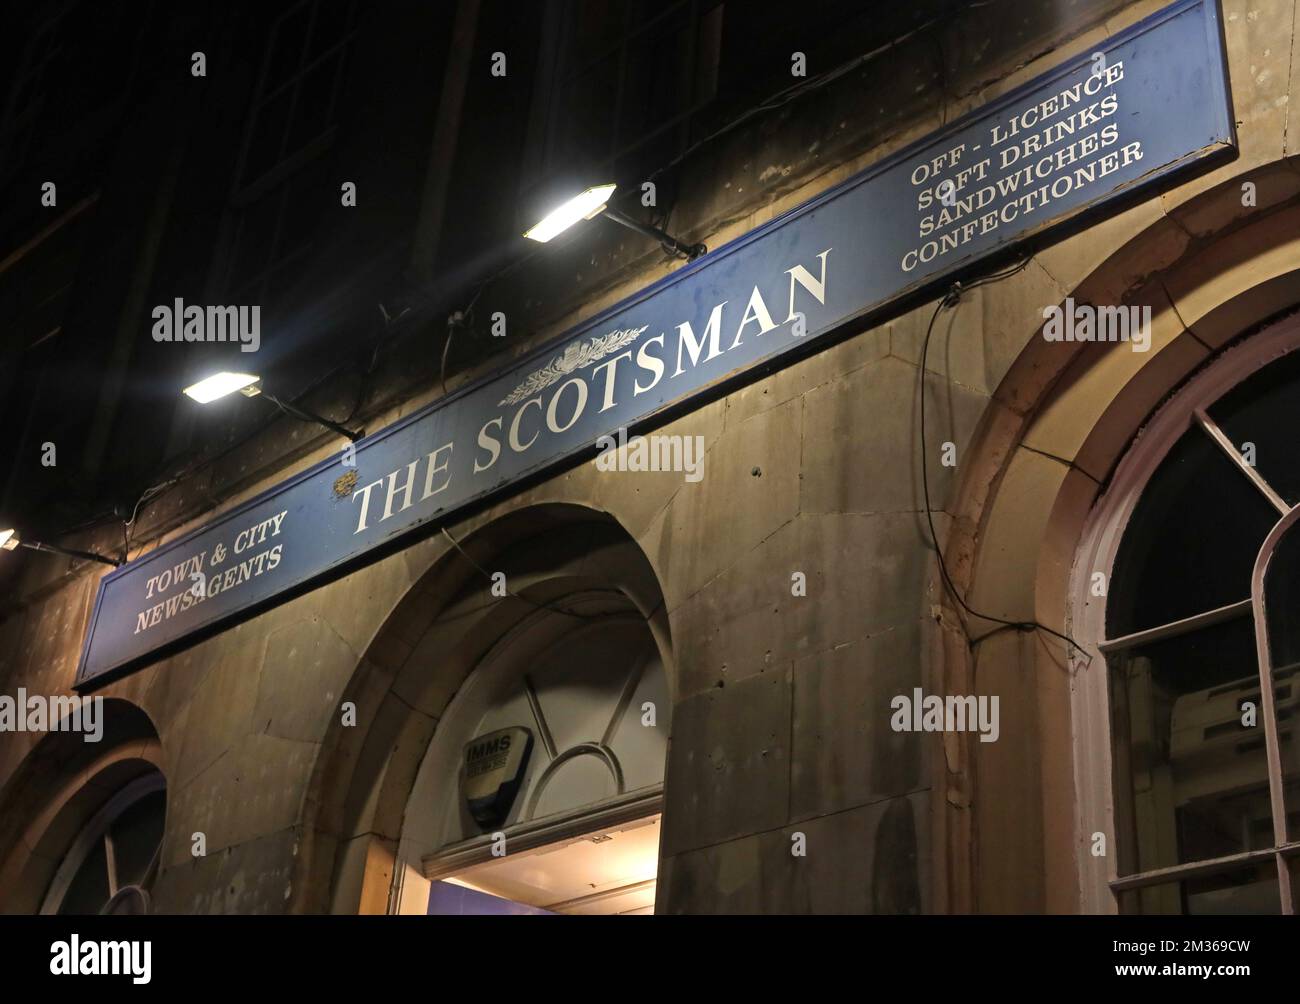 Agents de presse traditionnels vendant les agents de presse Scotsman, Town & City, 9 Waterloo place, Édimbourg, Lothian, Écosse, Royaume-Uni, EH1 3BG Banque D'Images